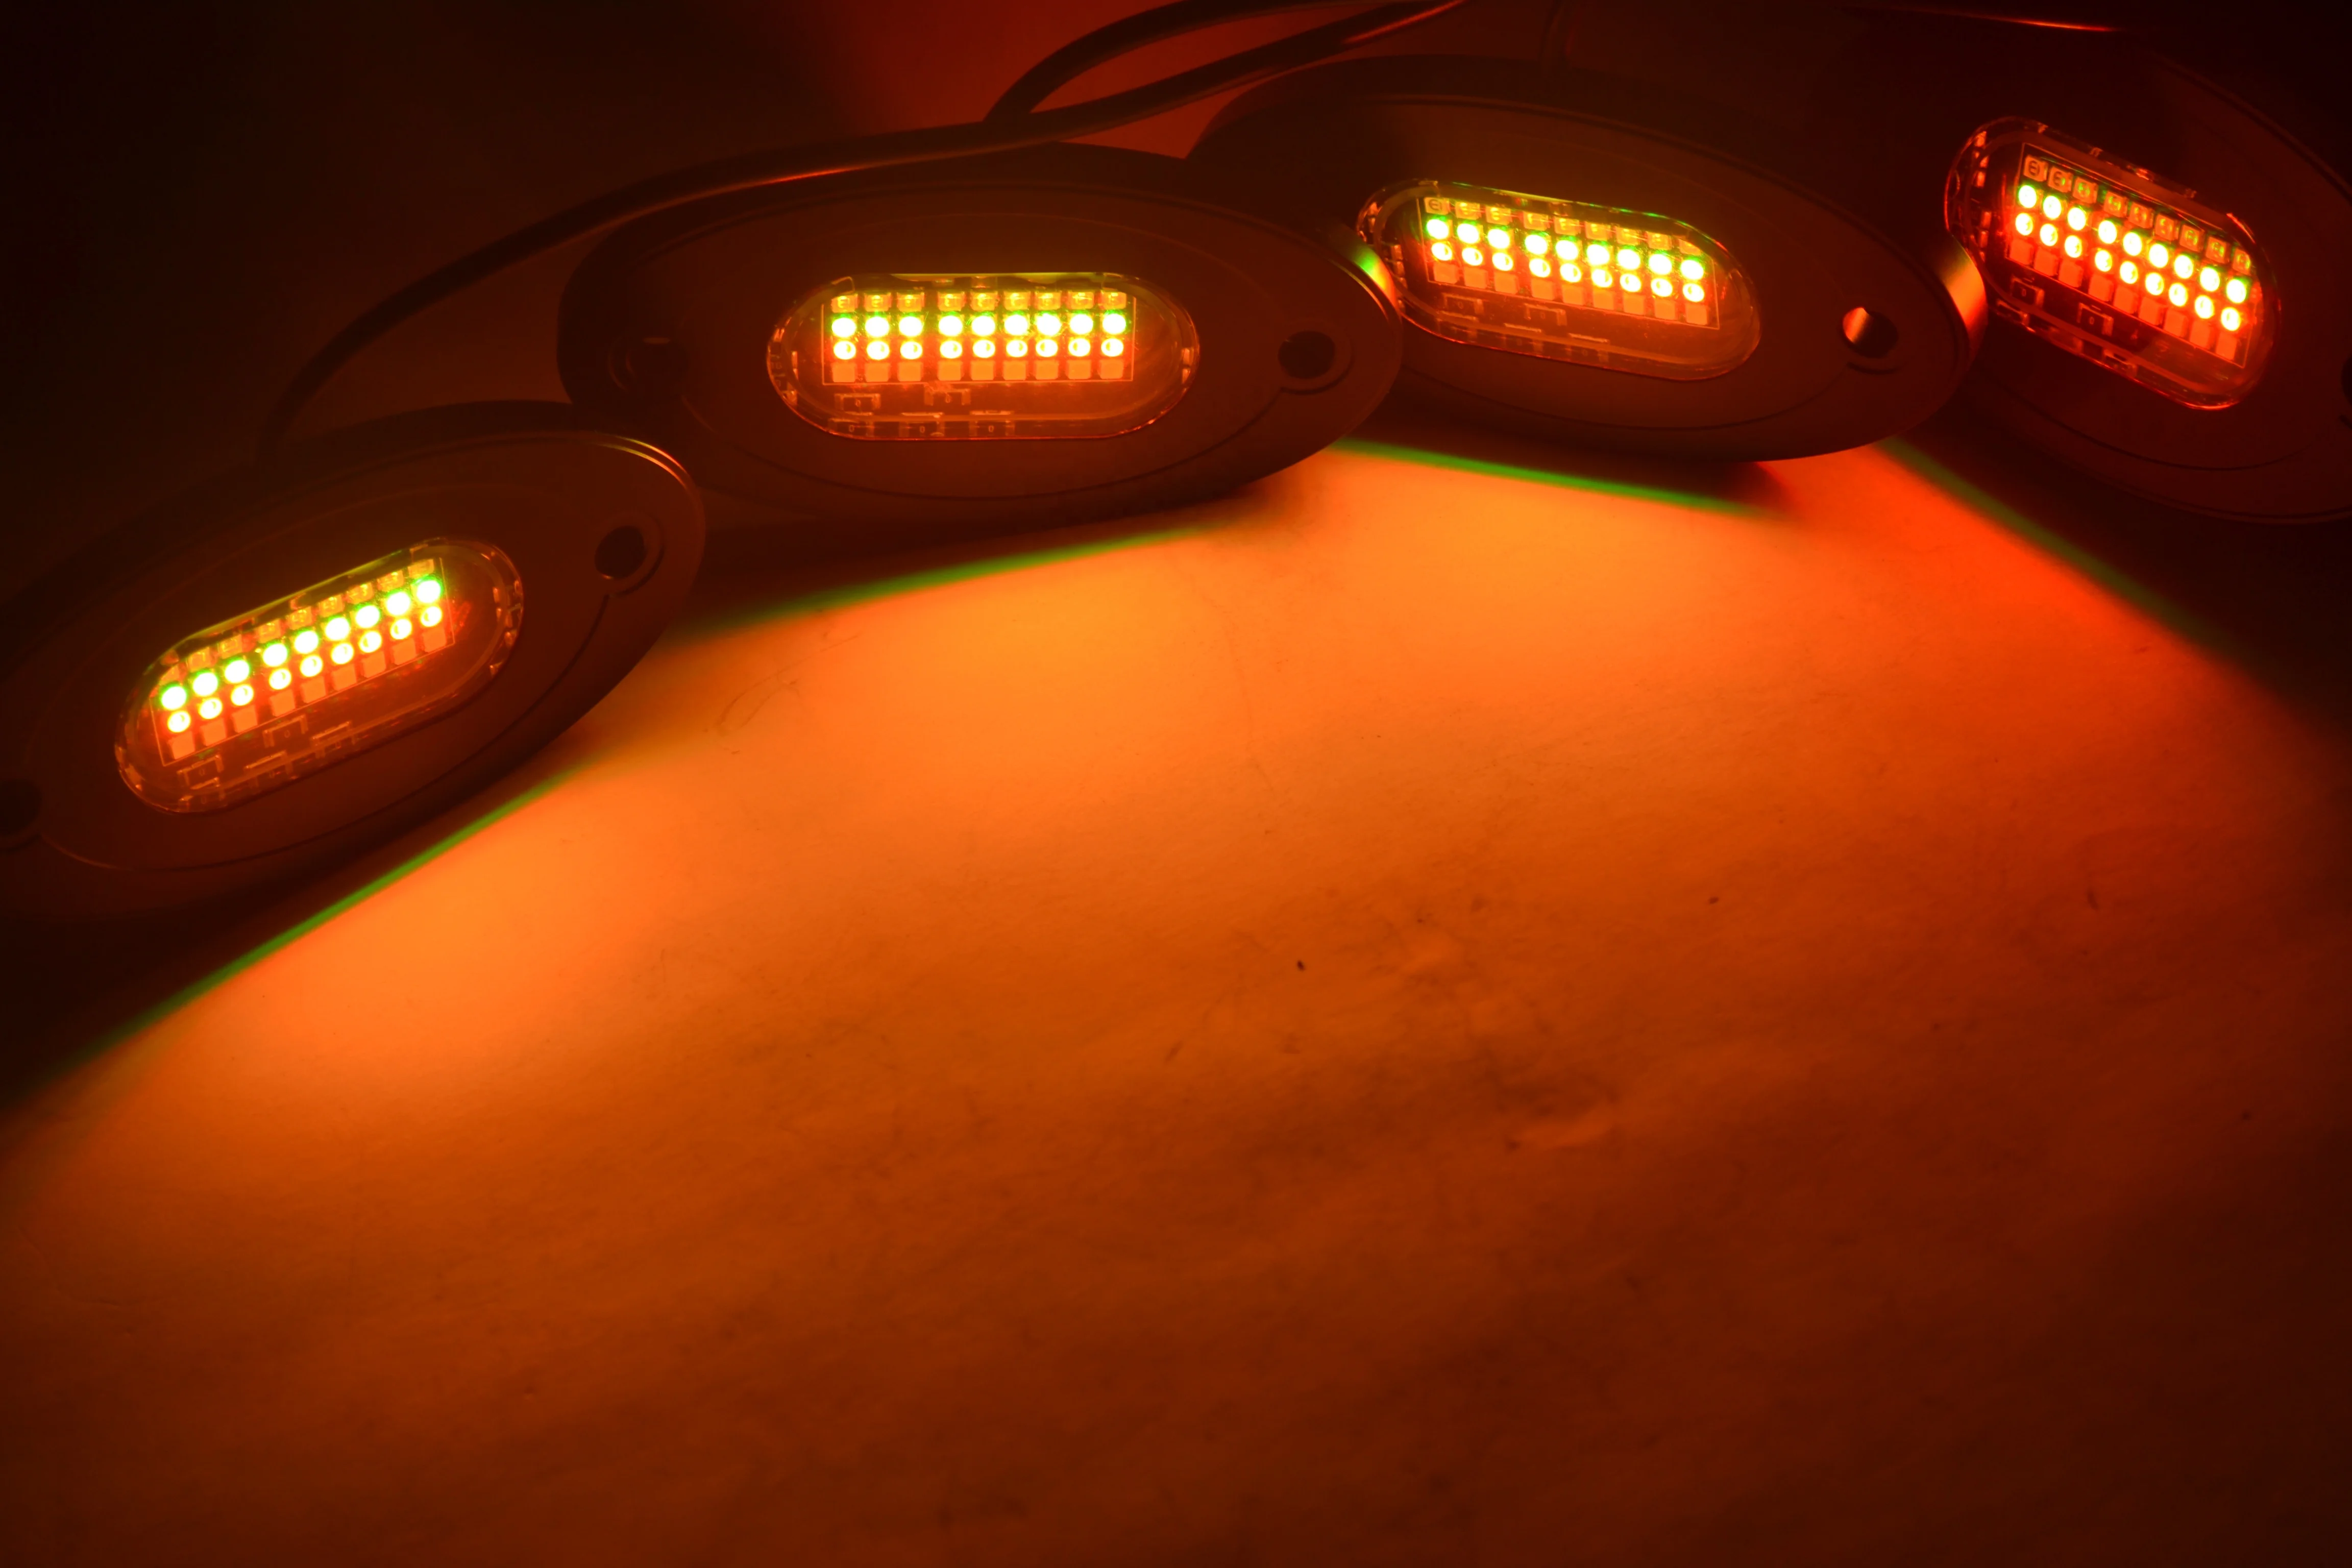 8 Светодиодных рок-светильников Pods RGBW - комплект многоцветного неонового освещения с контроллером Blue-tooth, музыкальный режим